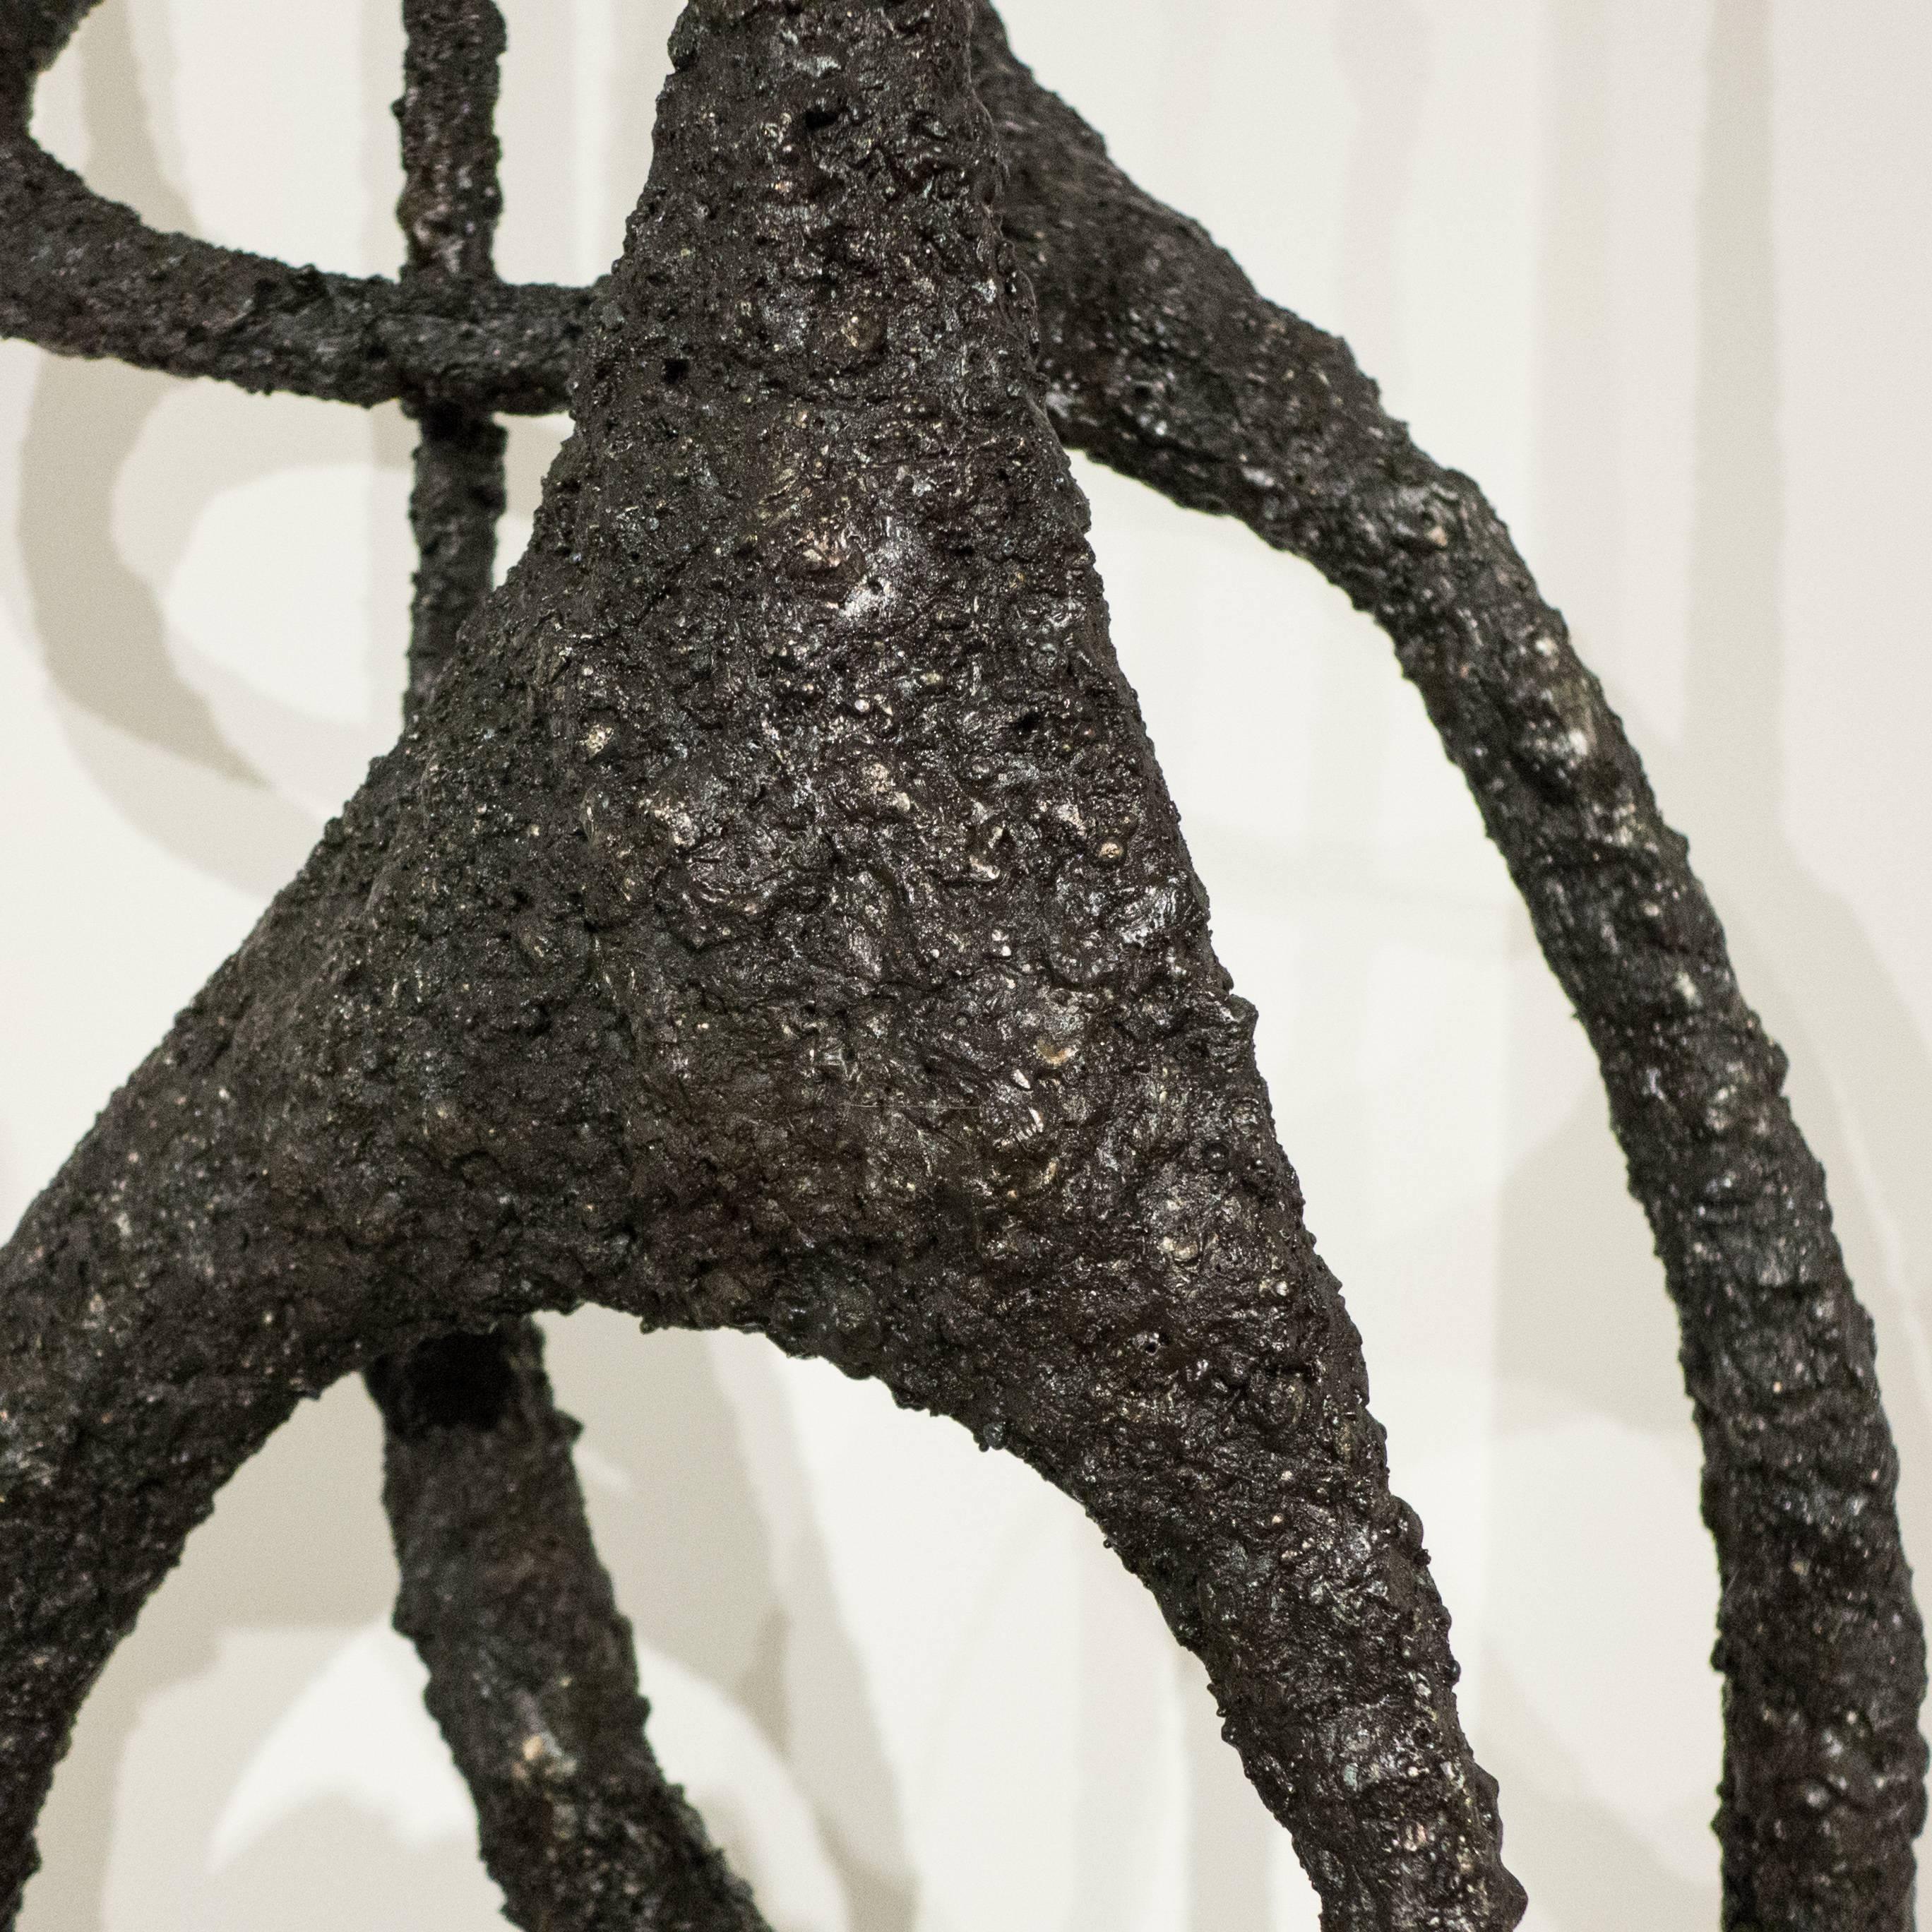 Steel James Bearden Tall Sculpture, 